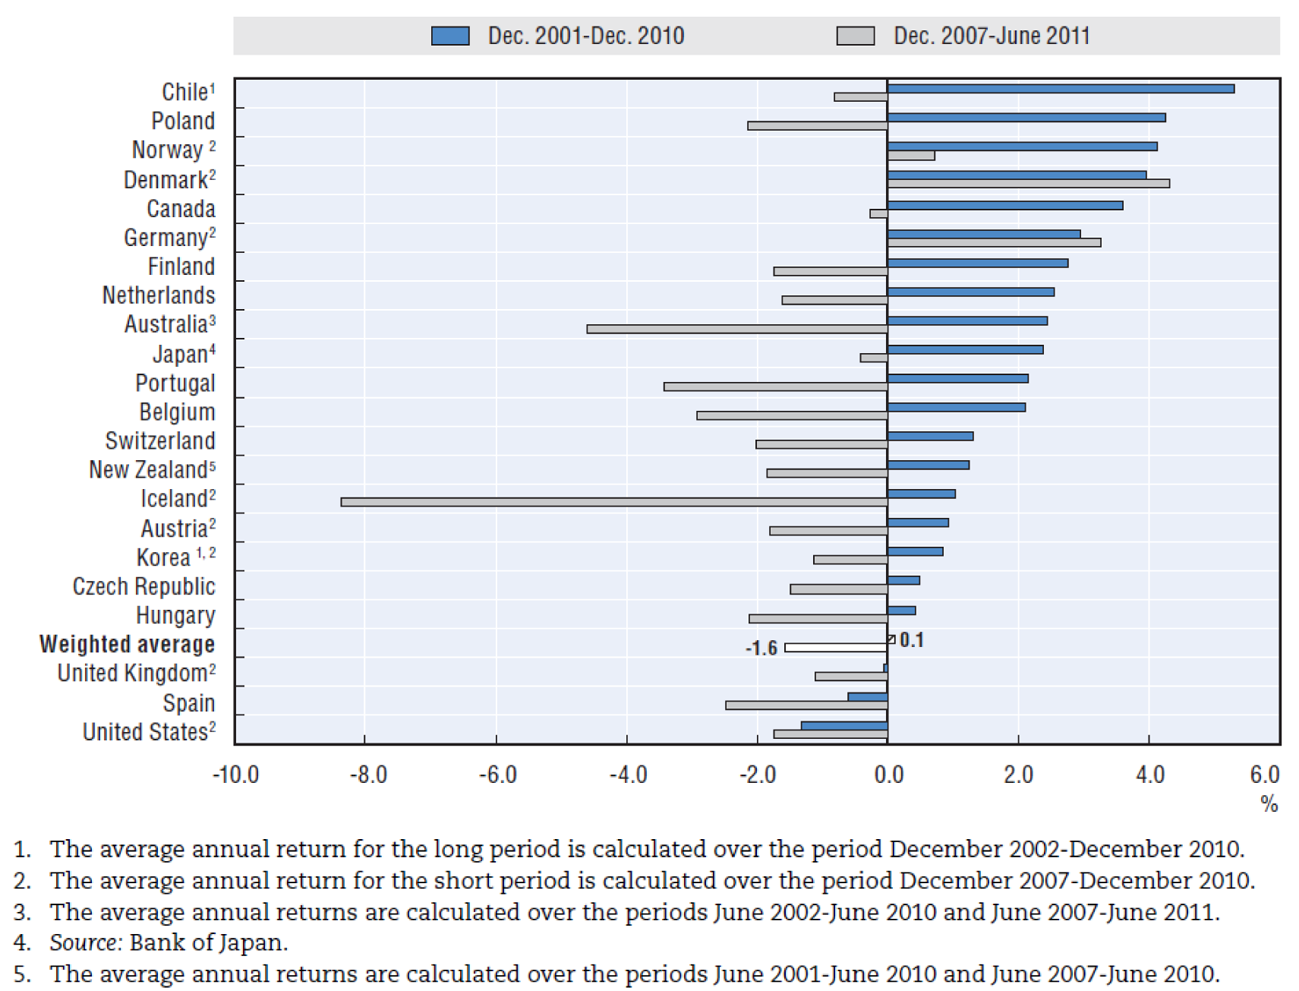 Figuur: Gemiddeld jaarlijks reële netto beleggingsrendement van pensioenfondsen in OESO-landen, dec. 2001 tot dec. 2010 en dec. 2007 tot juni 2011